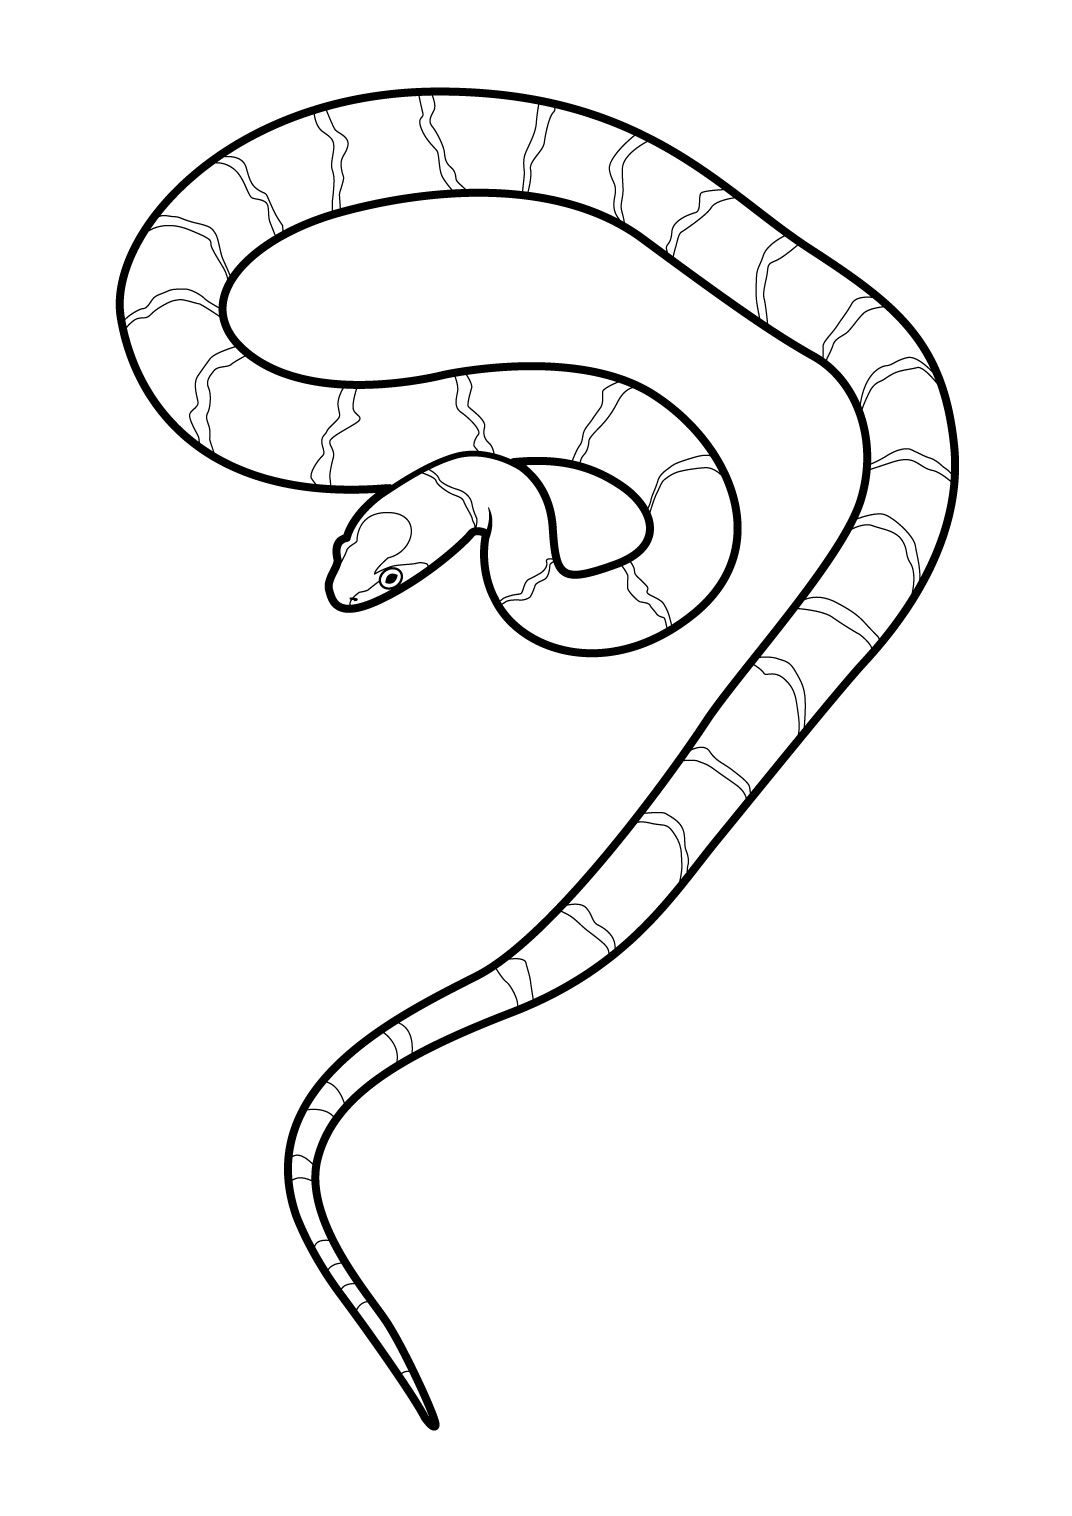 Распечатать картинку змеи. Змея раскраска. Раскраска змеи для детей. Рисунок змеи для детей. Трафарет змеи для раскрашивания.